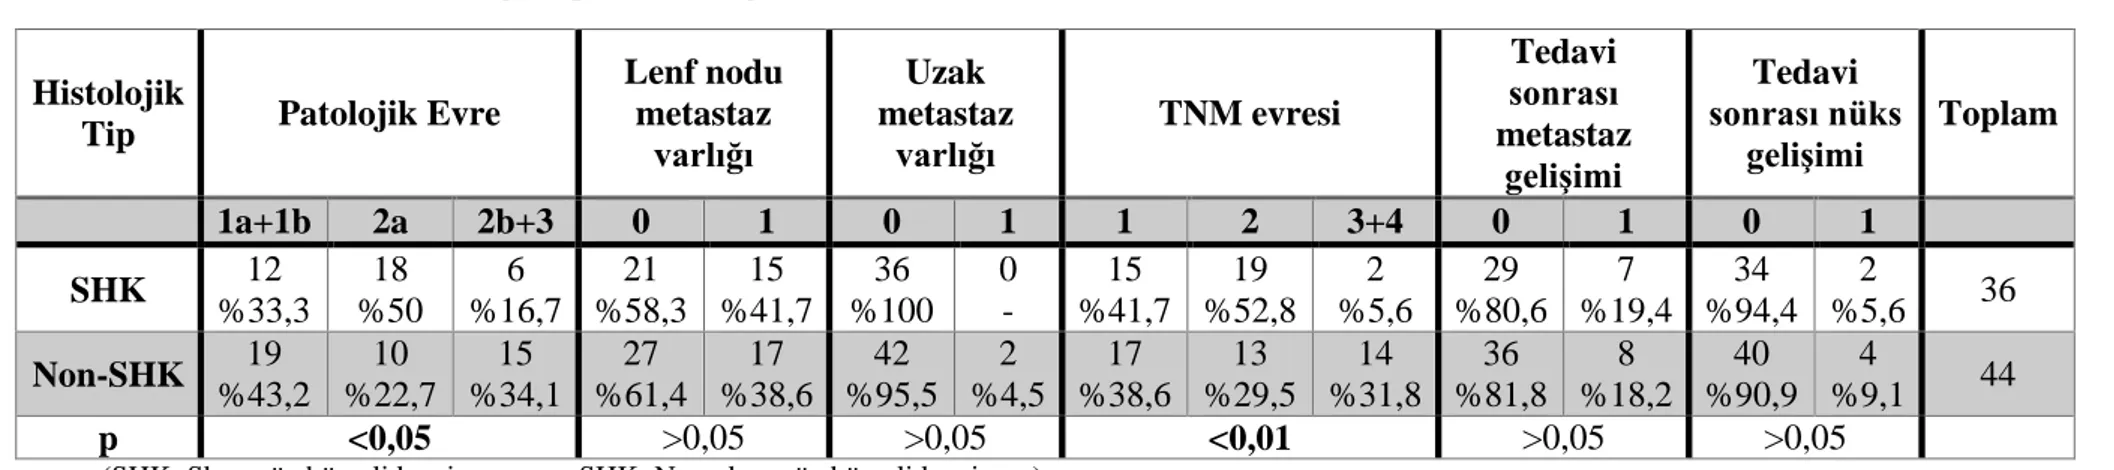 Tablo 4.2. Tümörün histolojik tipi ile klinik parametreler arasındaki ilişki 